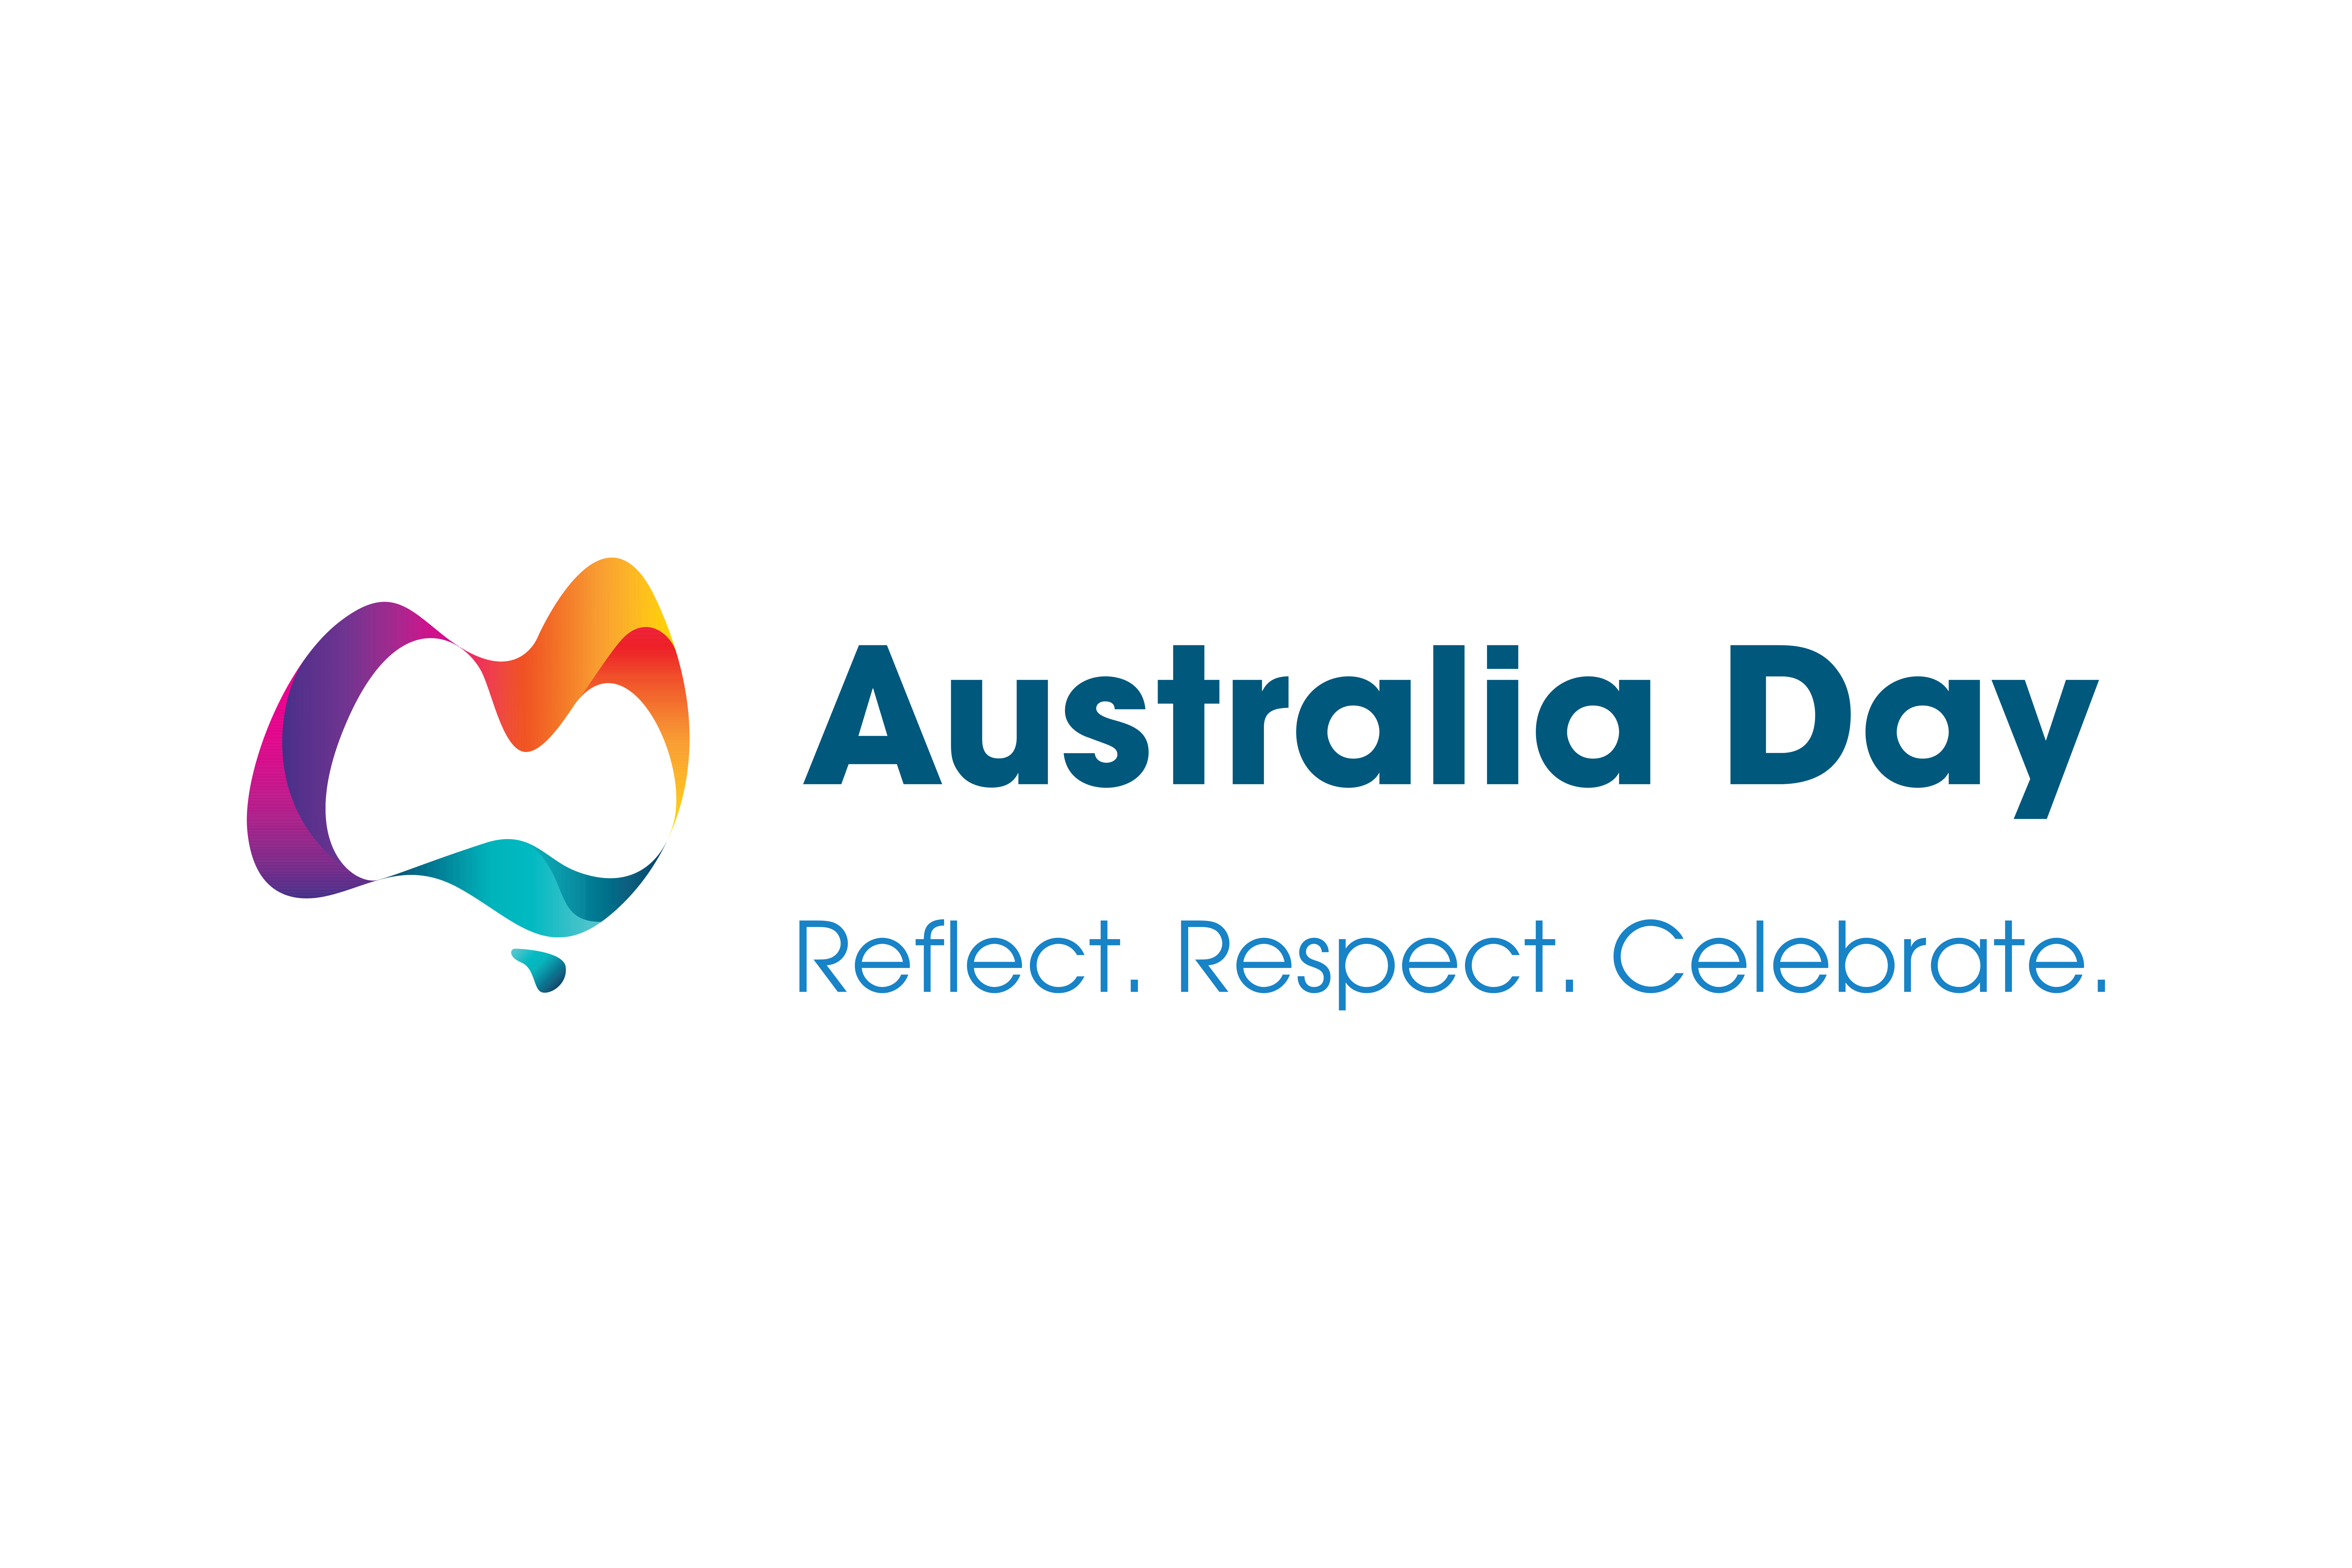 Australia Day 2021 Blog